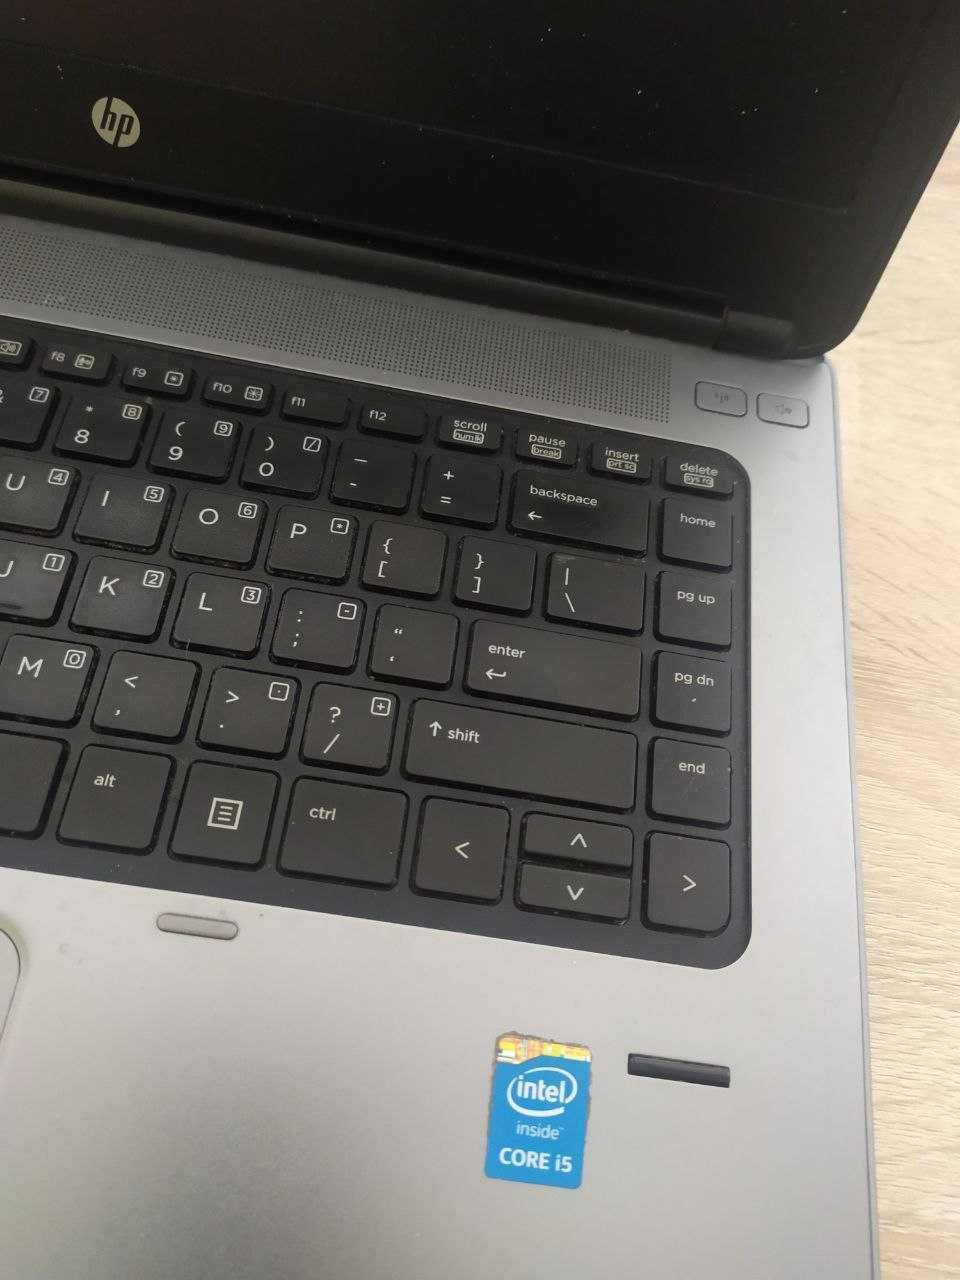 HP ProBook 640 g1